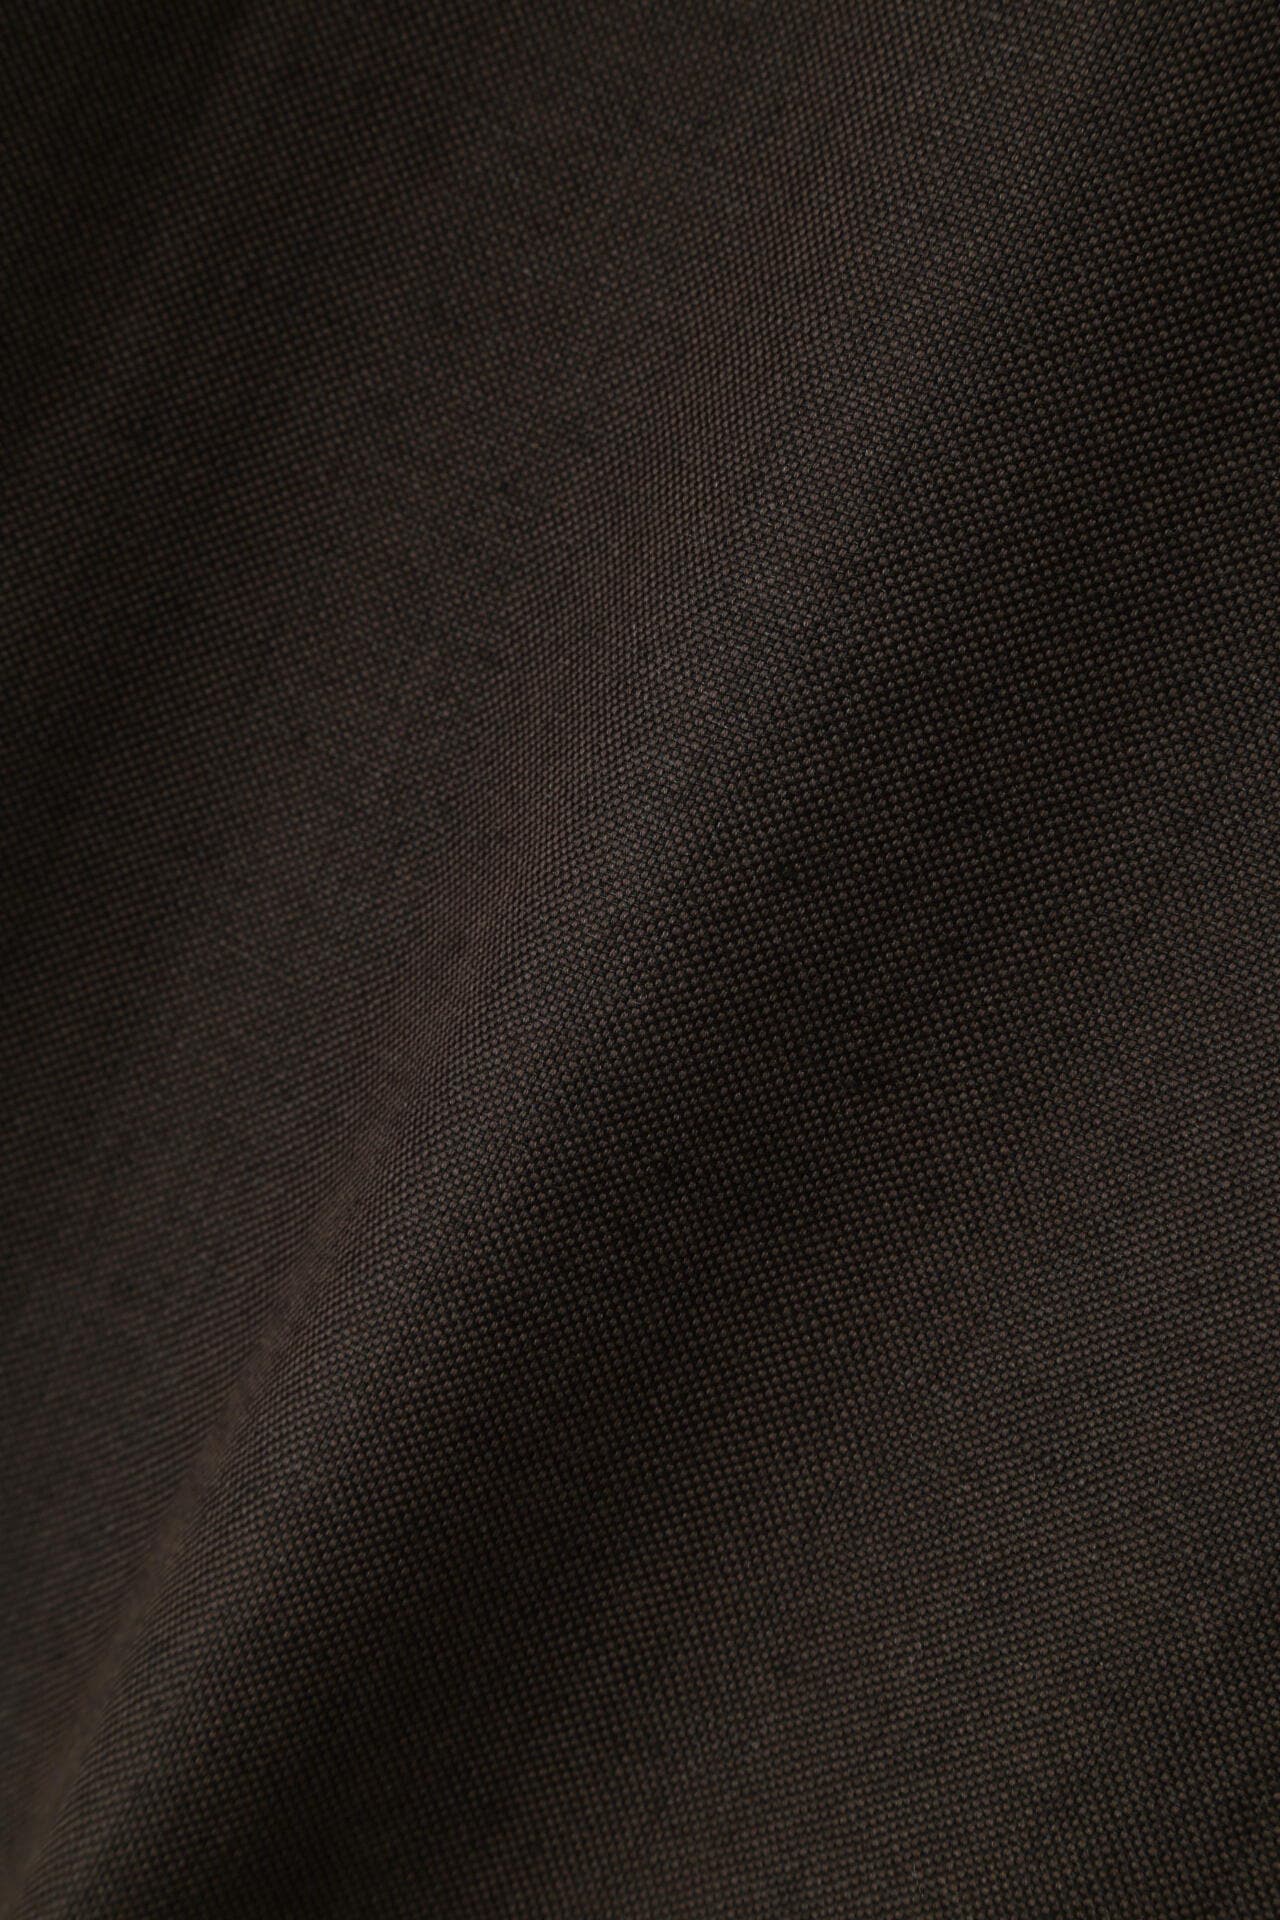 【MARGARET HOWELL】 Wool Linen HOPSACK レディース OLIVE1 I その他のジャケット アウター マーガレット・ハウエル